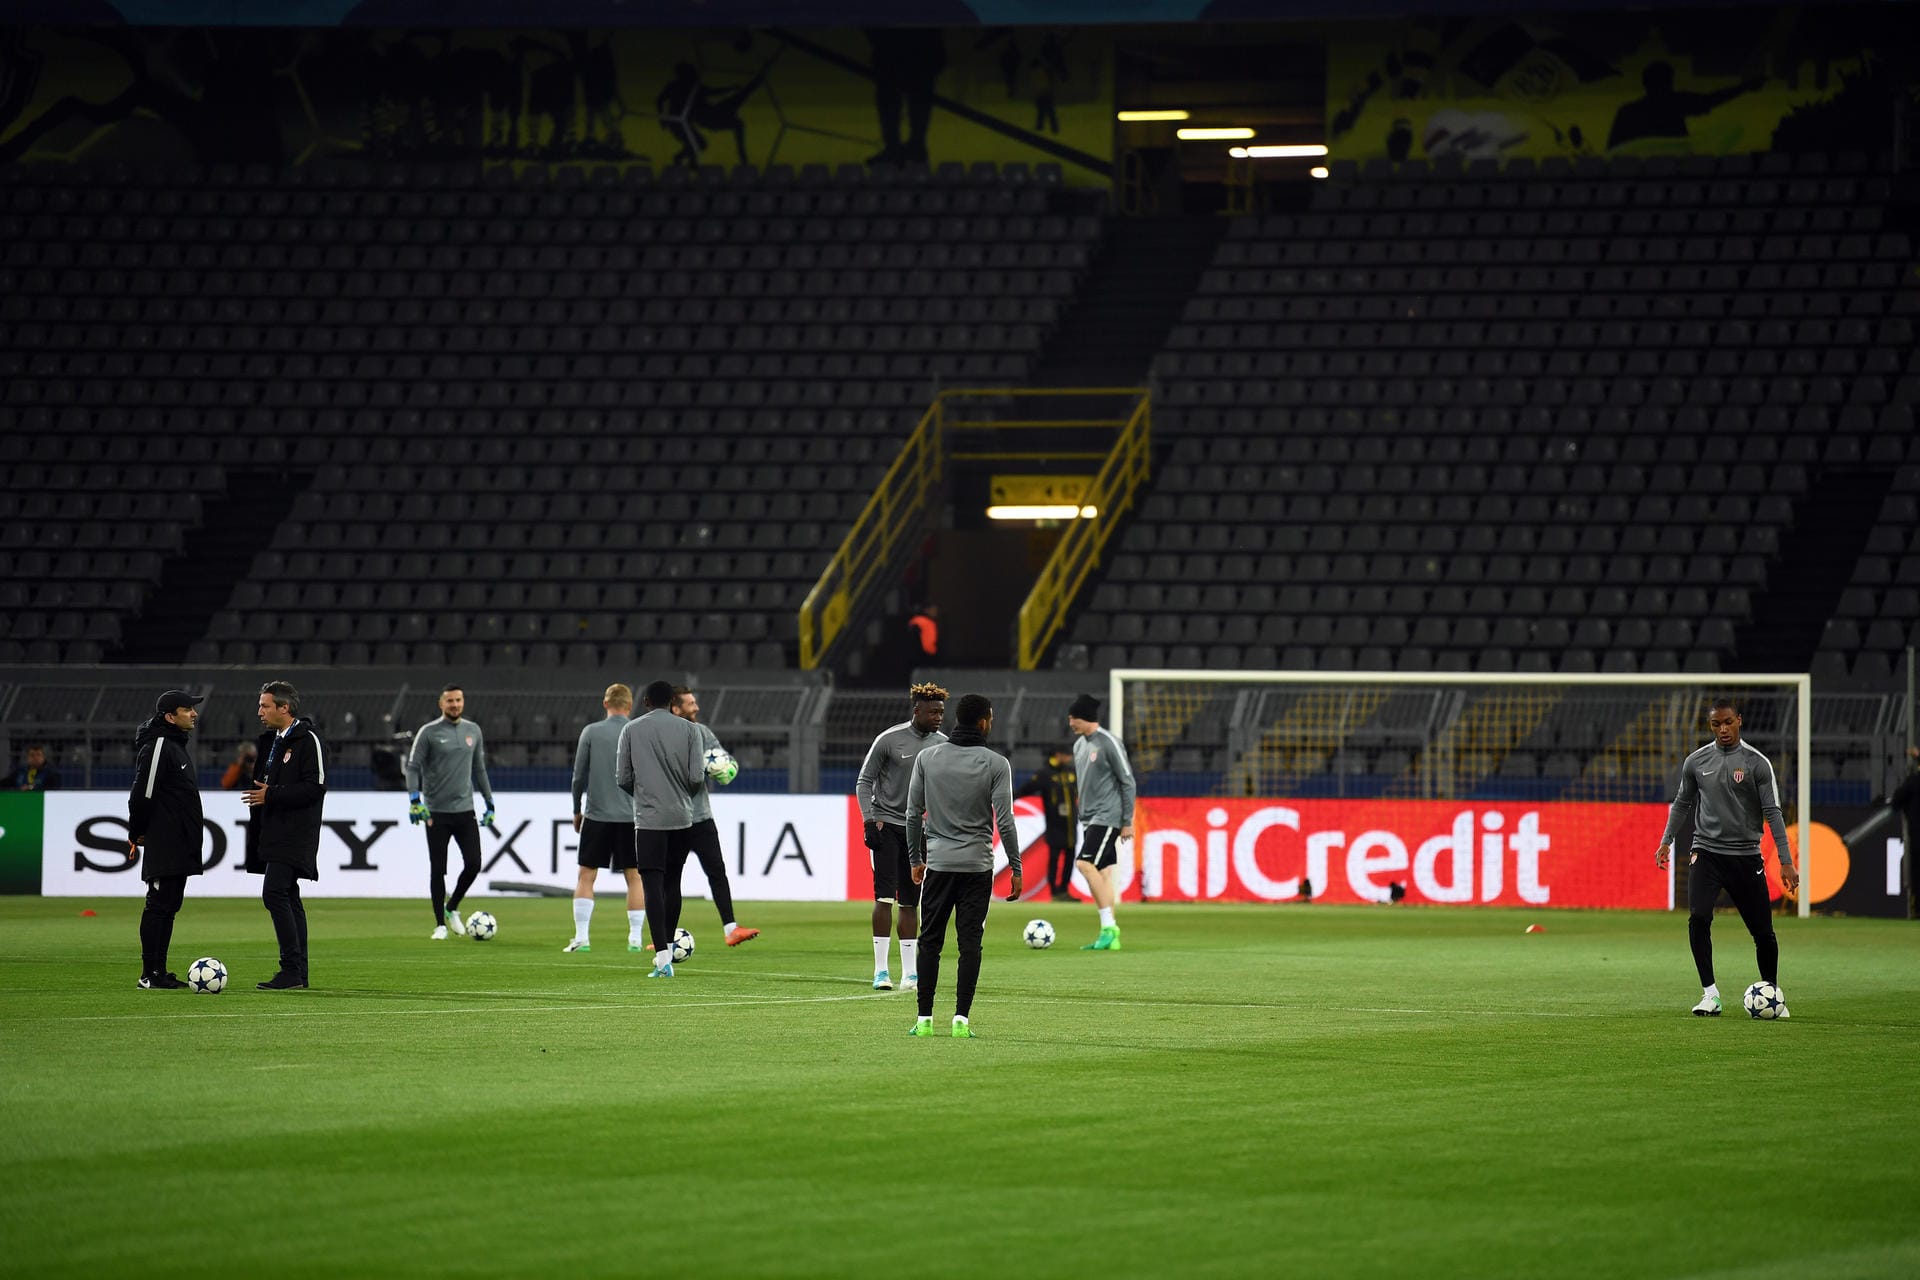 Die Spieler vom AS Monaco stehen nach der Spielabsage im leeren Stadion.